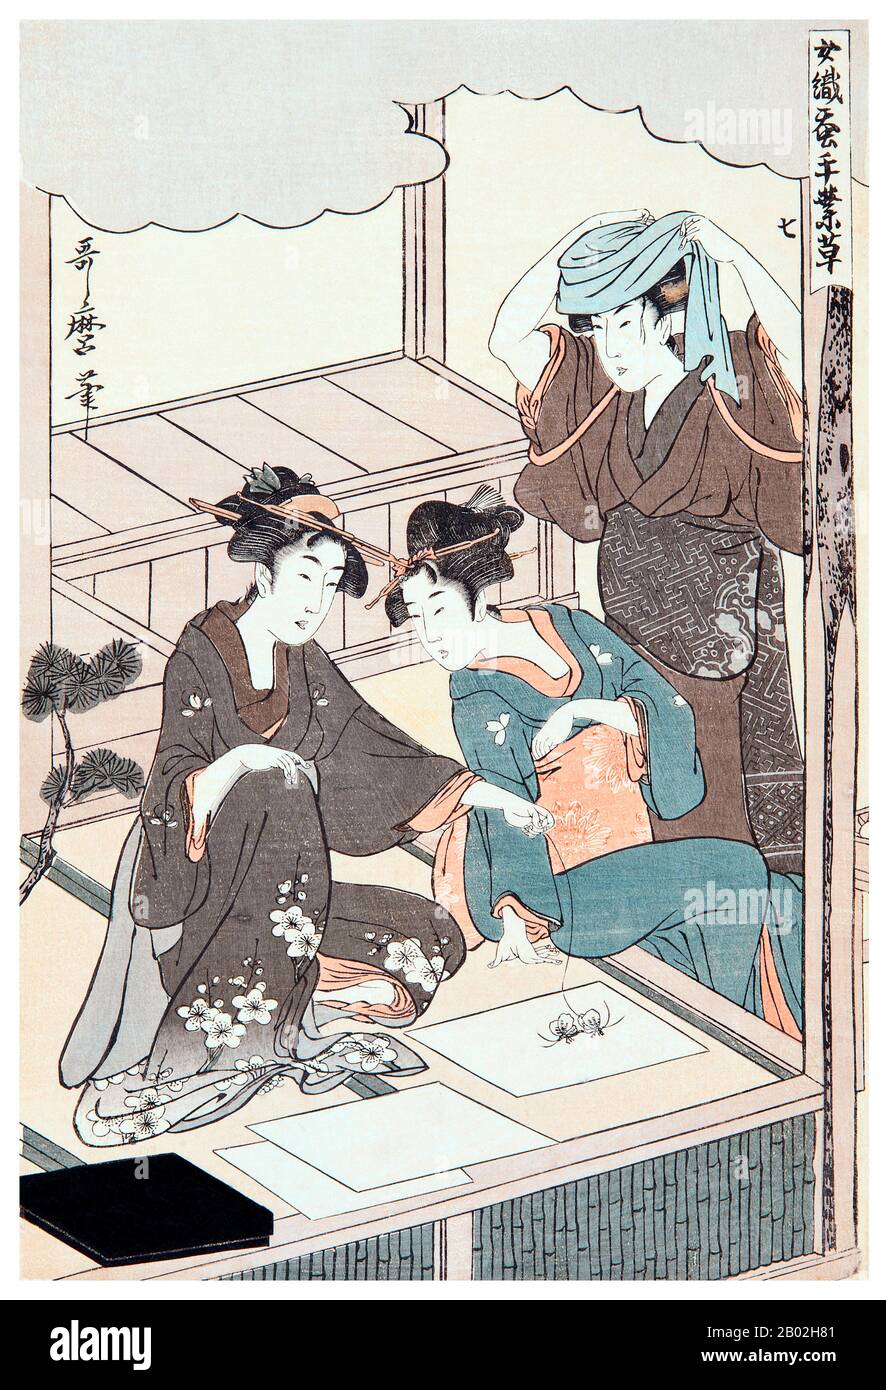 7. "L'émergence des papillons", représentant deux filles regardant des papillons pondent des œufs sur un morceau de papier, un autre debout et regardant la scène. Kitagawa Utamaro (env. 1753 - 31 octobre 1806) était un peintre et graveur japonais, considéré comme l'un des plus grands artistes de gravures de bois (ukiyo-e). Il est surtout connu pour ses études magistralement composées de femmes, connues sous le nom de bijinga. Il a également produit des études sur la nature, notamment des livres illustrés d'insectes. Banque D'Images